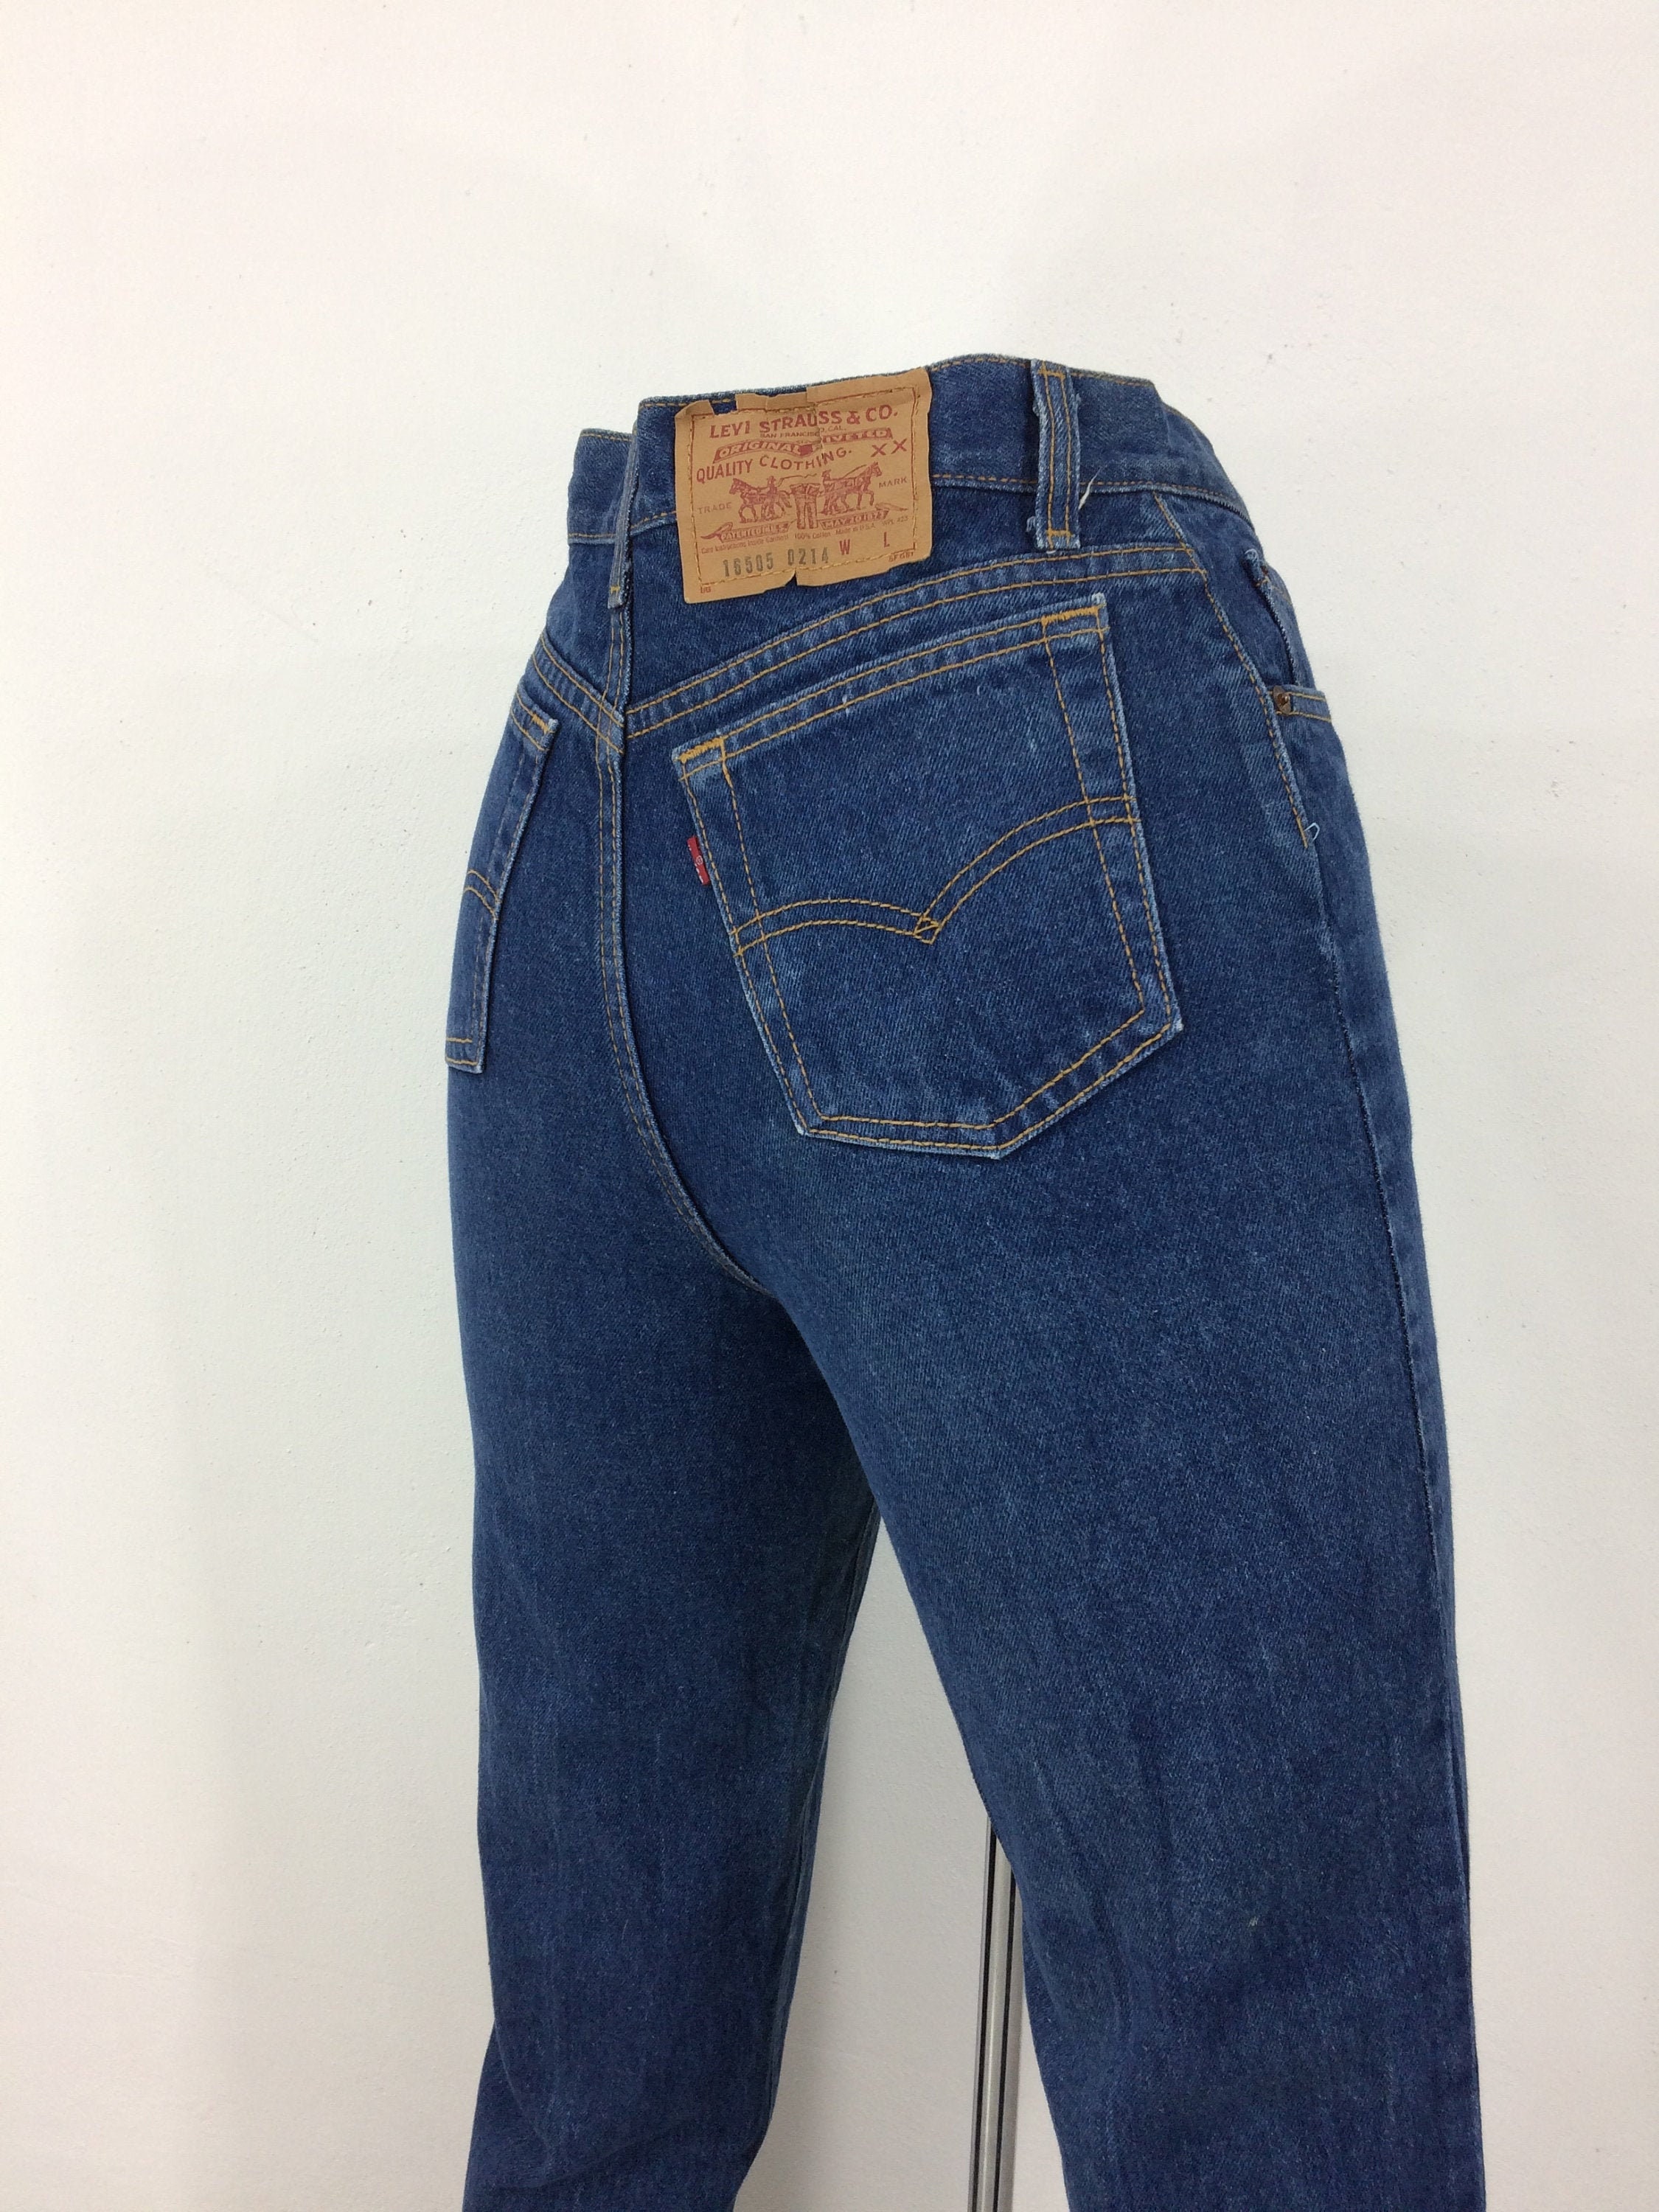 Sz 28 Vintage Levis 505 Women's Jeans W28 L32 High | Etsy